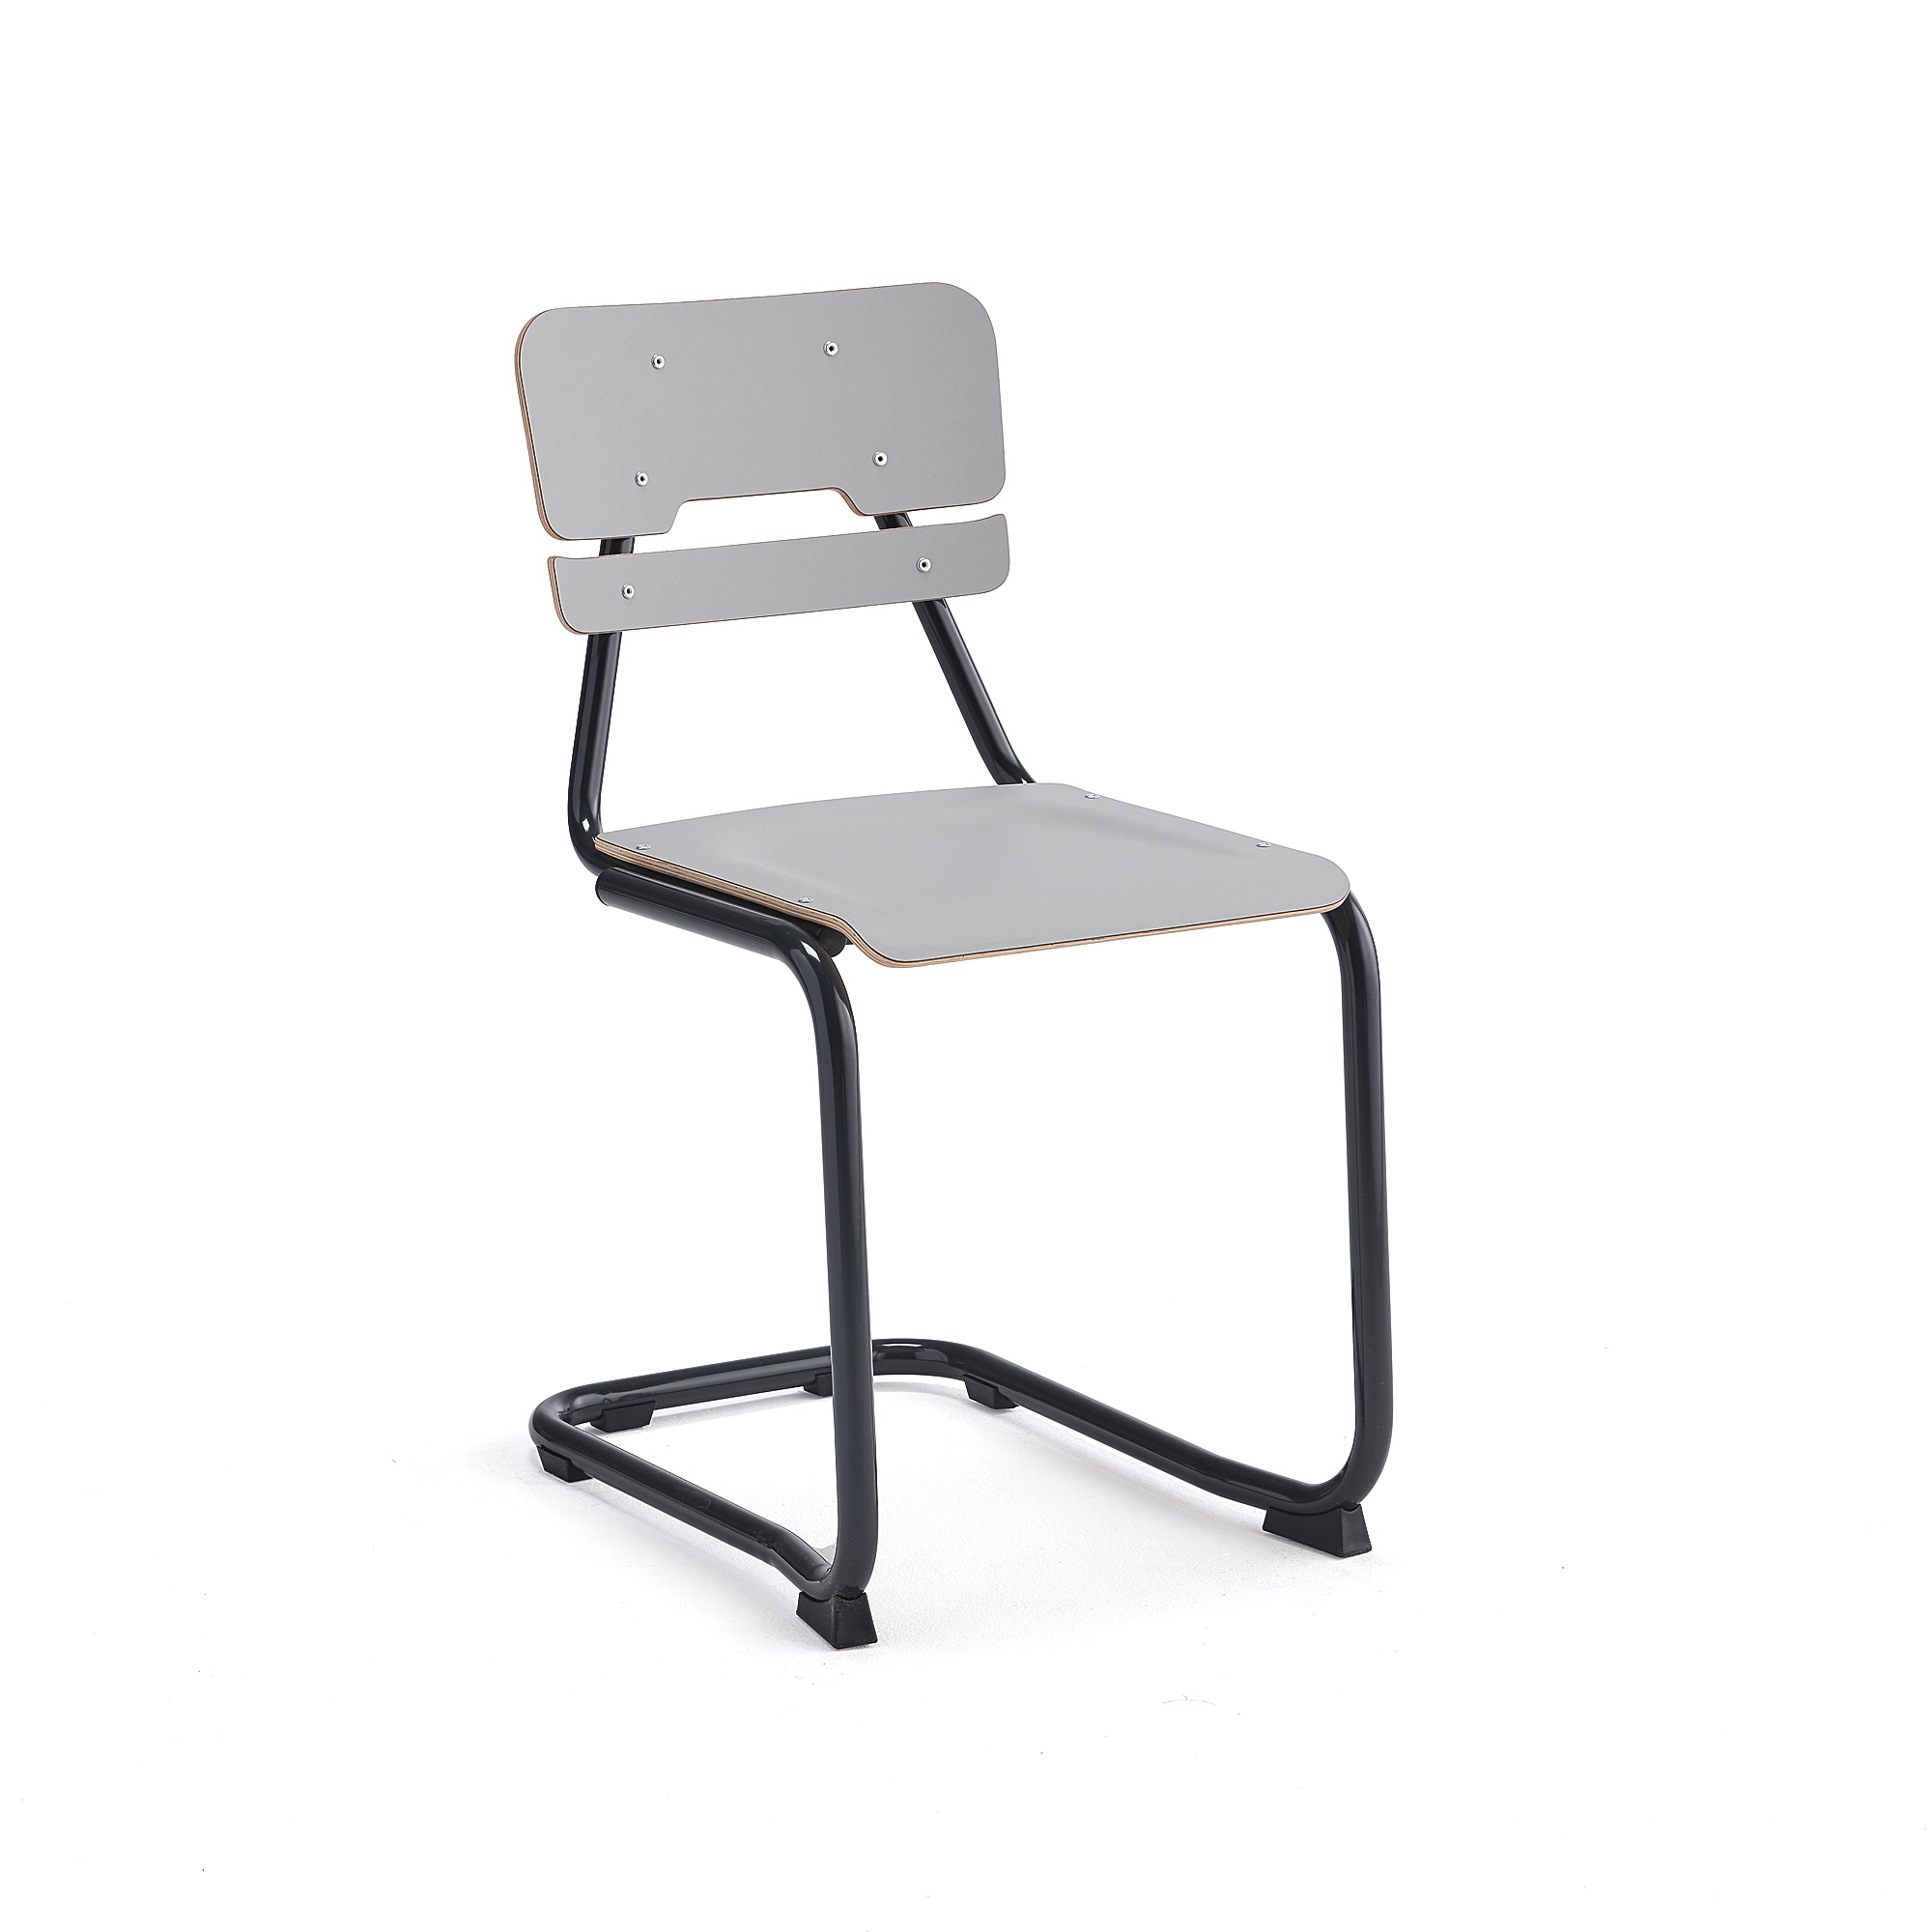 Školní židle LEGERE I, výška 450 mm, antracitově šedá, šedá